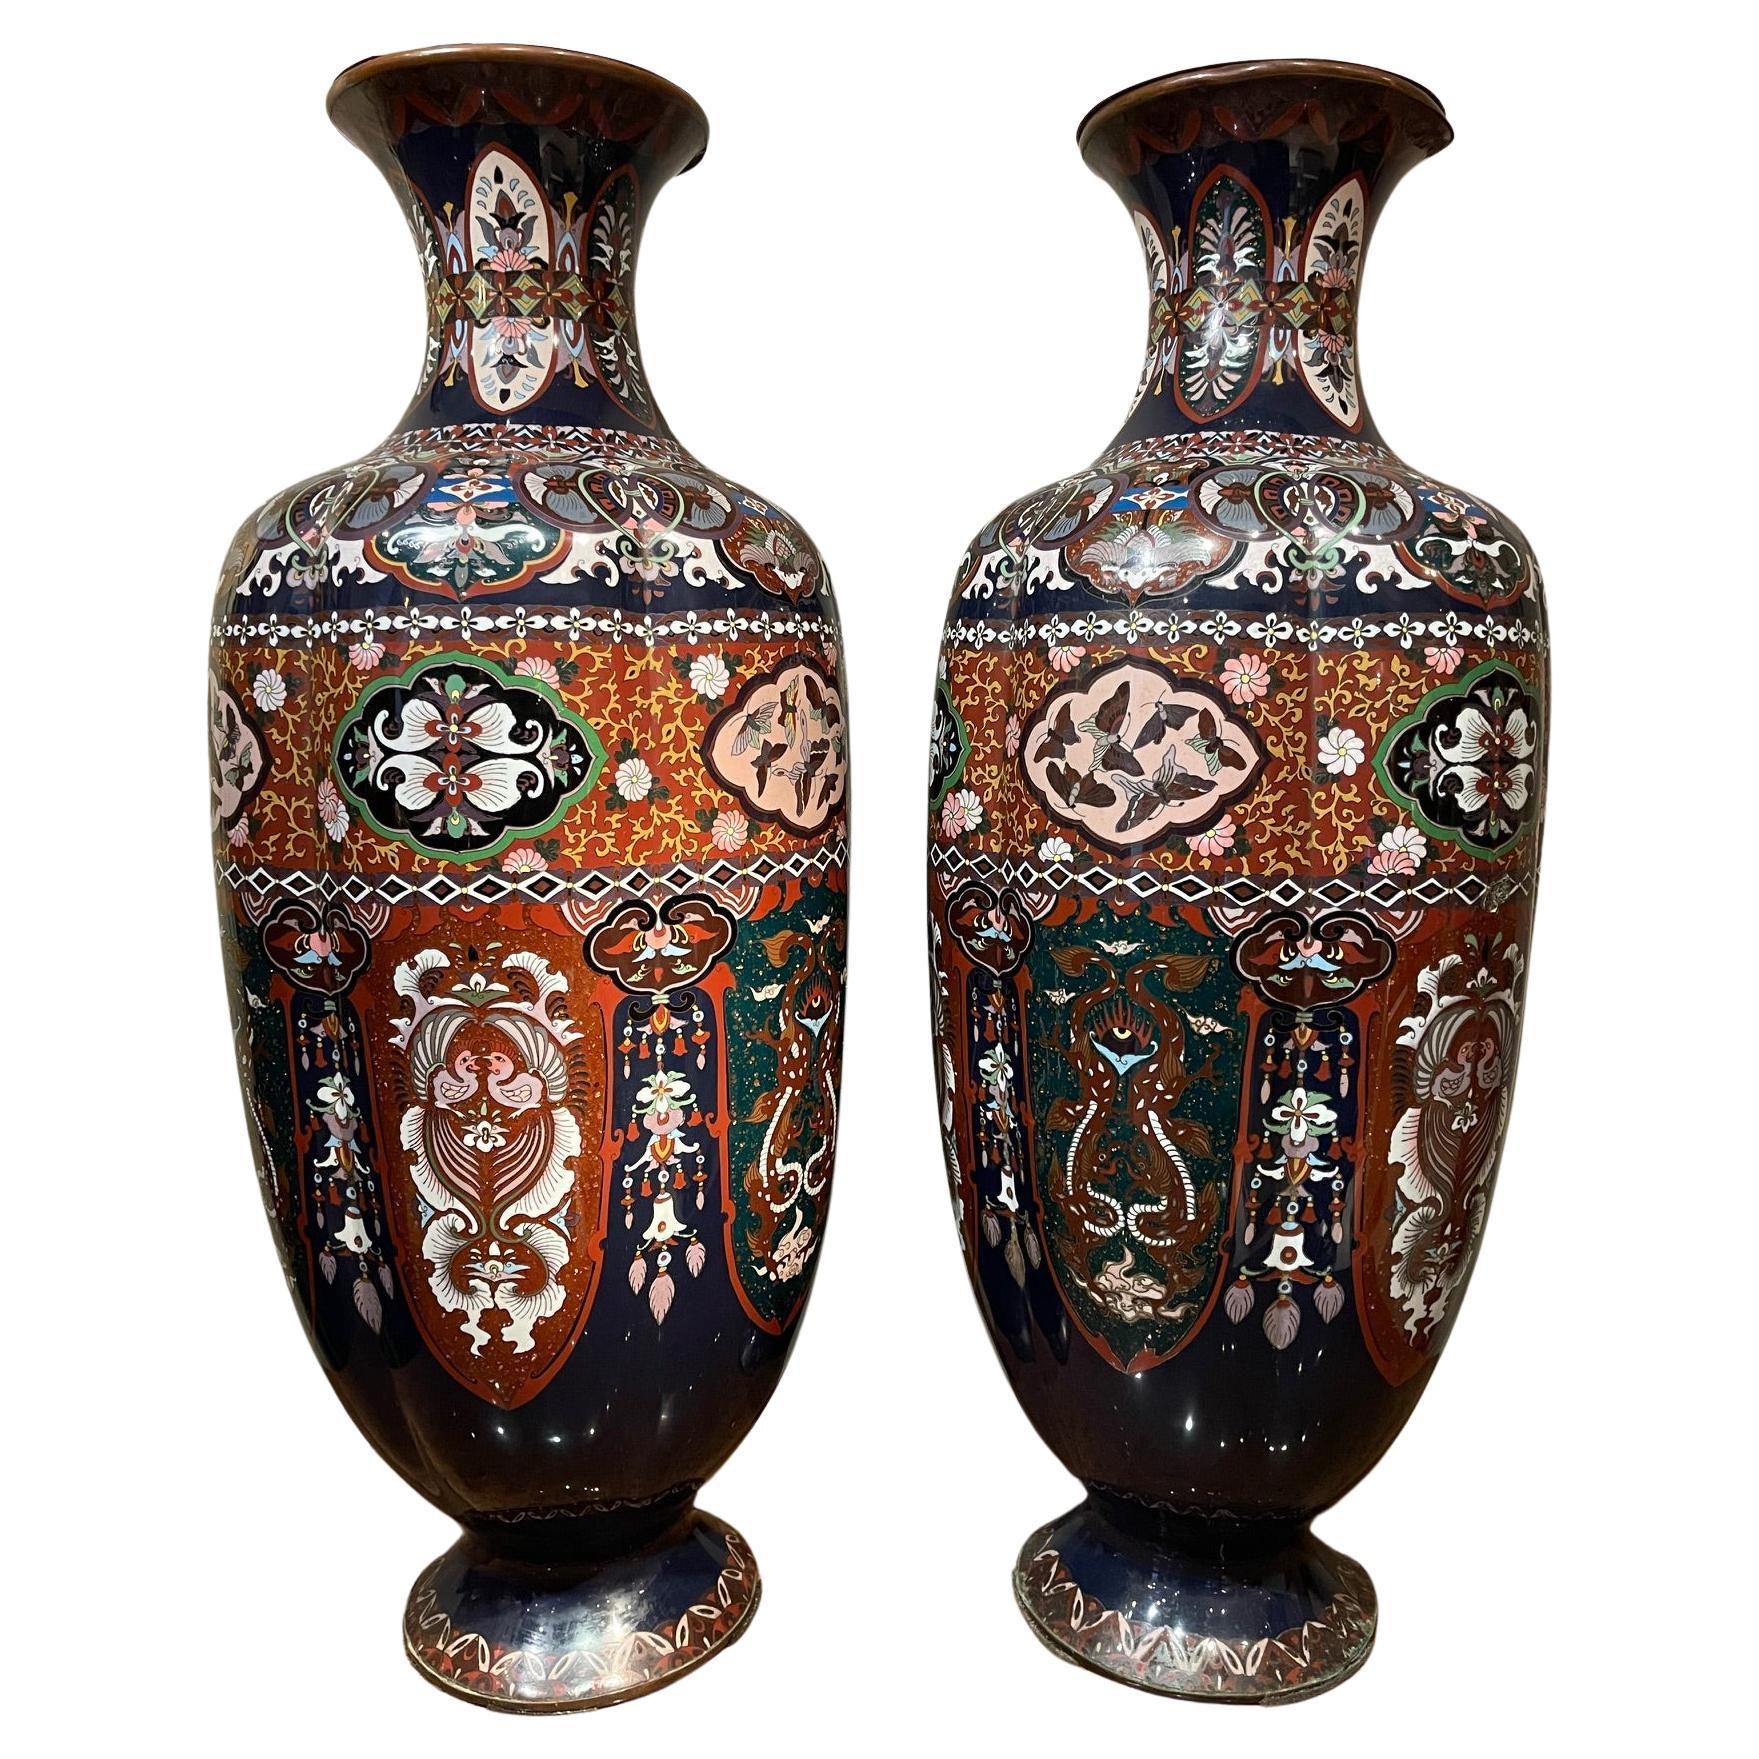 Très grande paire de vases cloisonnés, Japon, 19e siècle